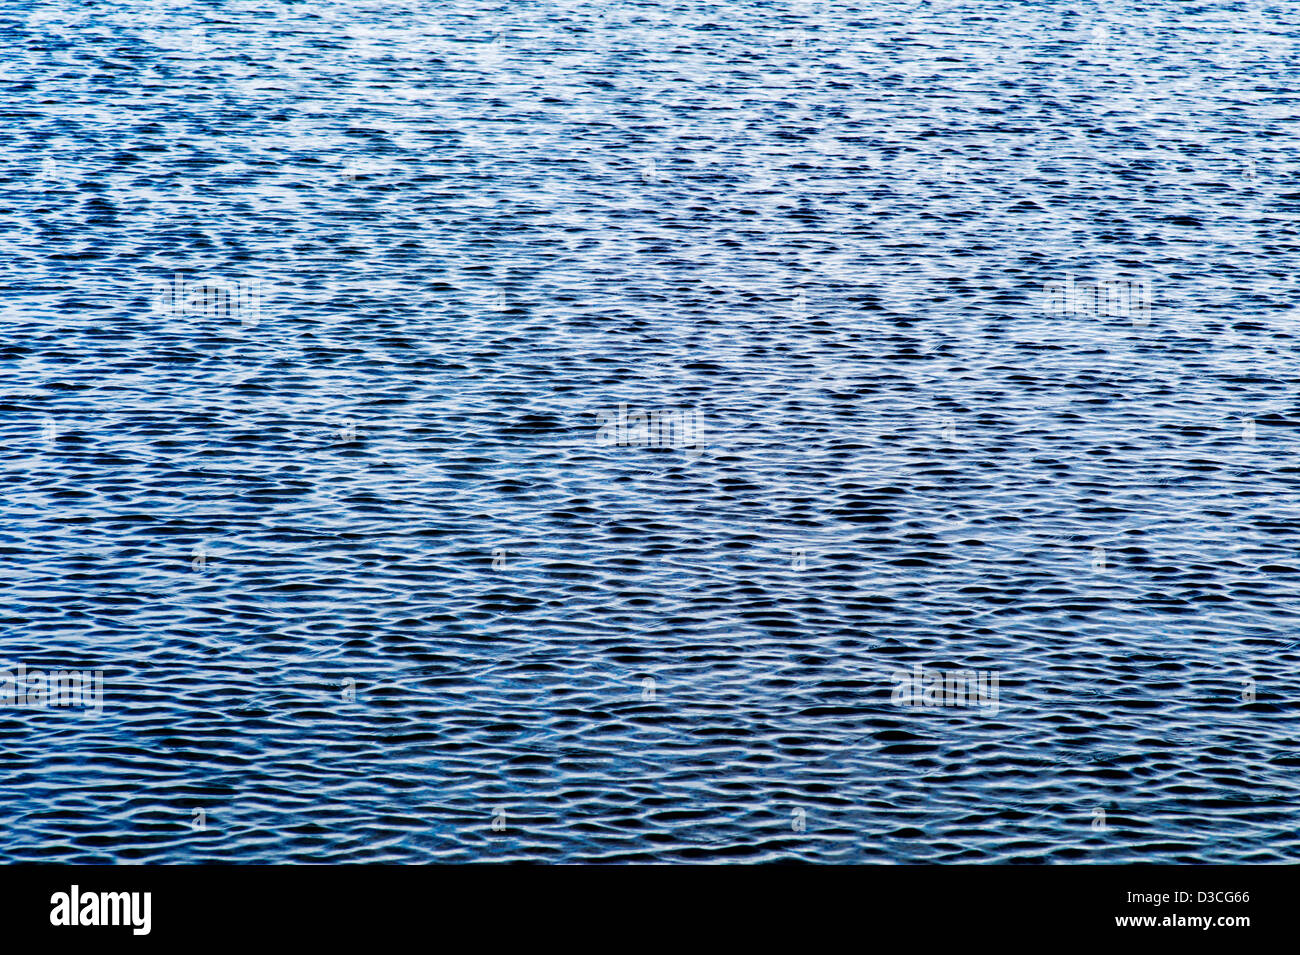 Close up of ripples and waves, Beluga Bay, Homer, Alaska, USA Stock Photo